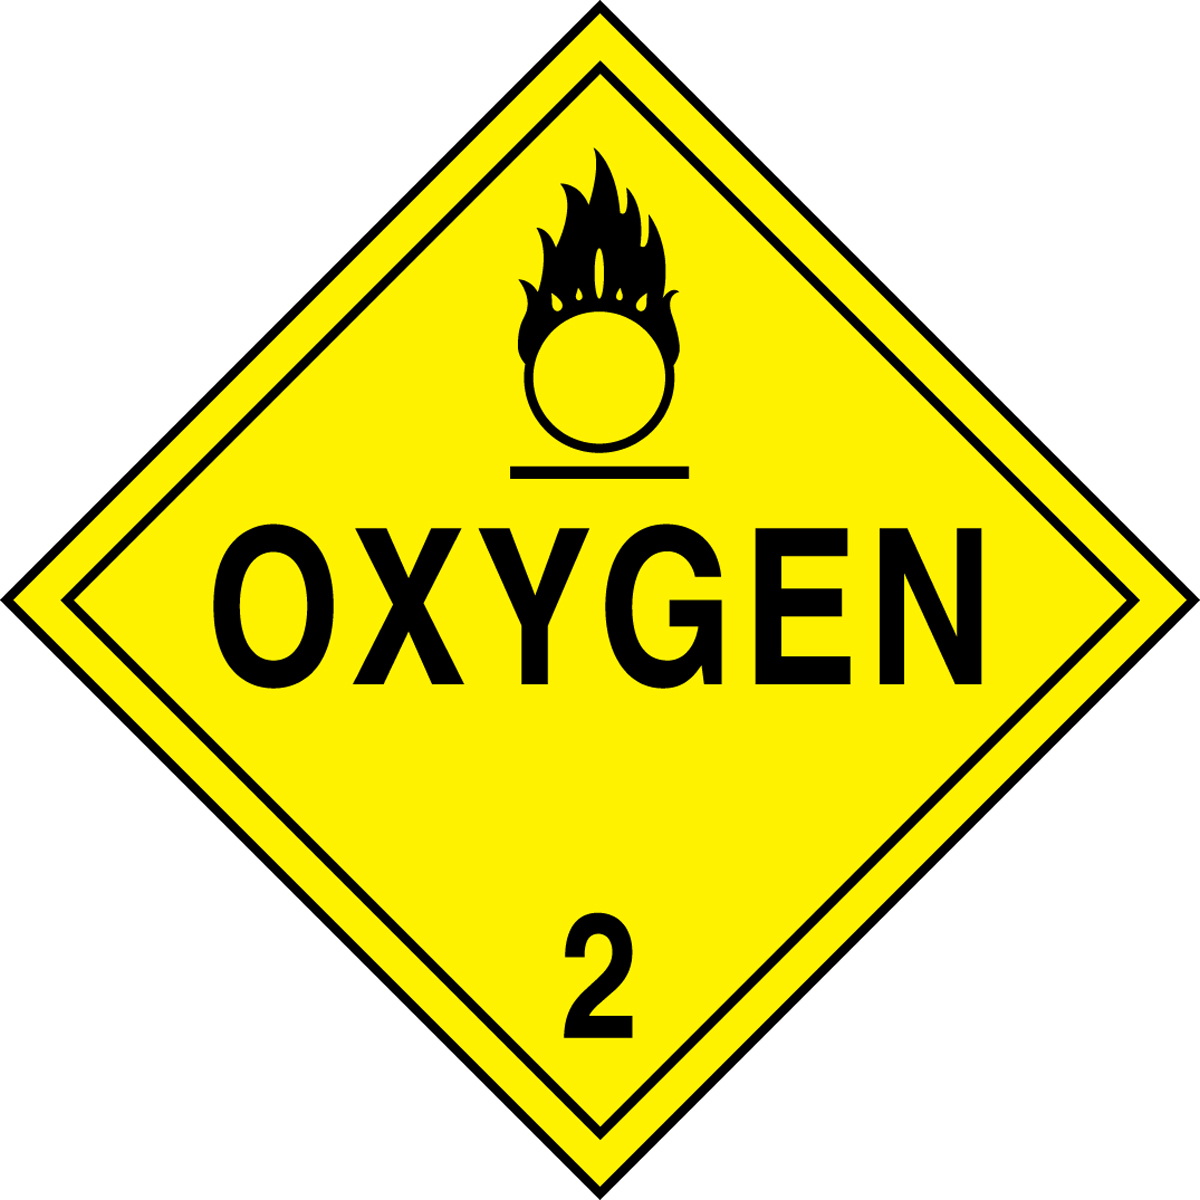 OXYGEN (W/GRAPHIC)